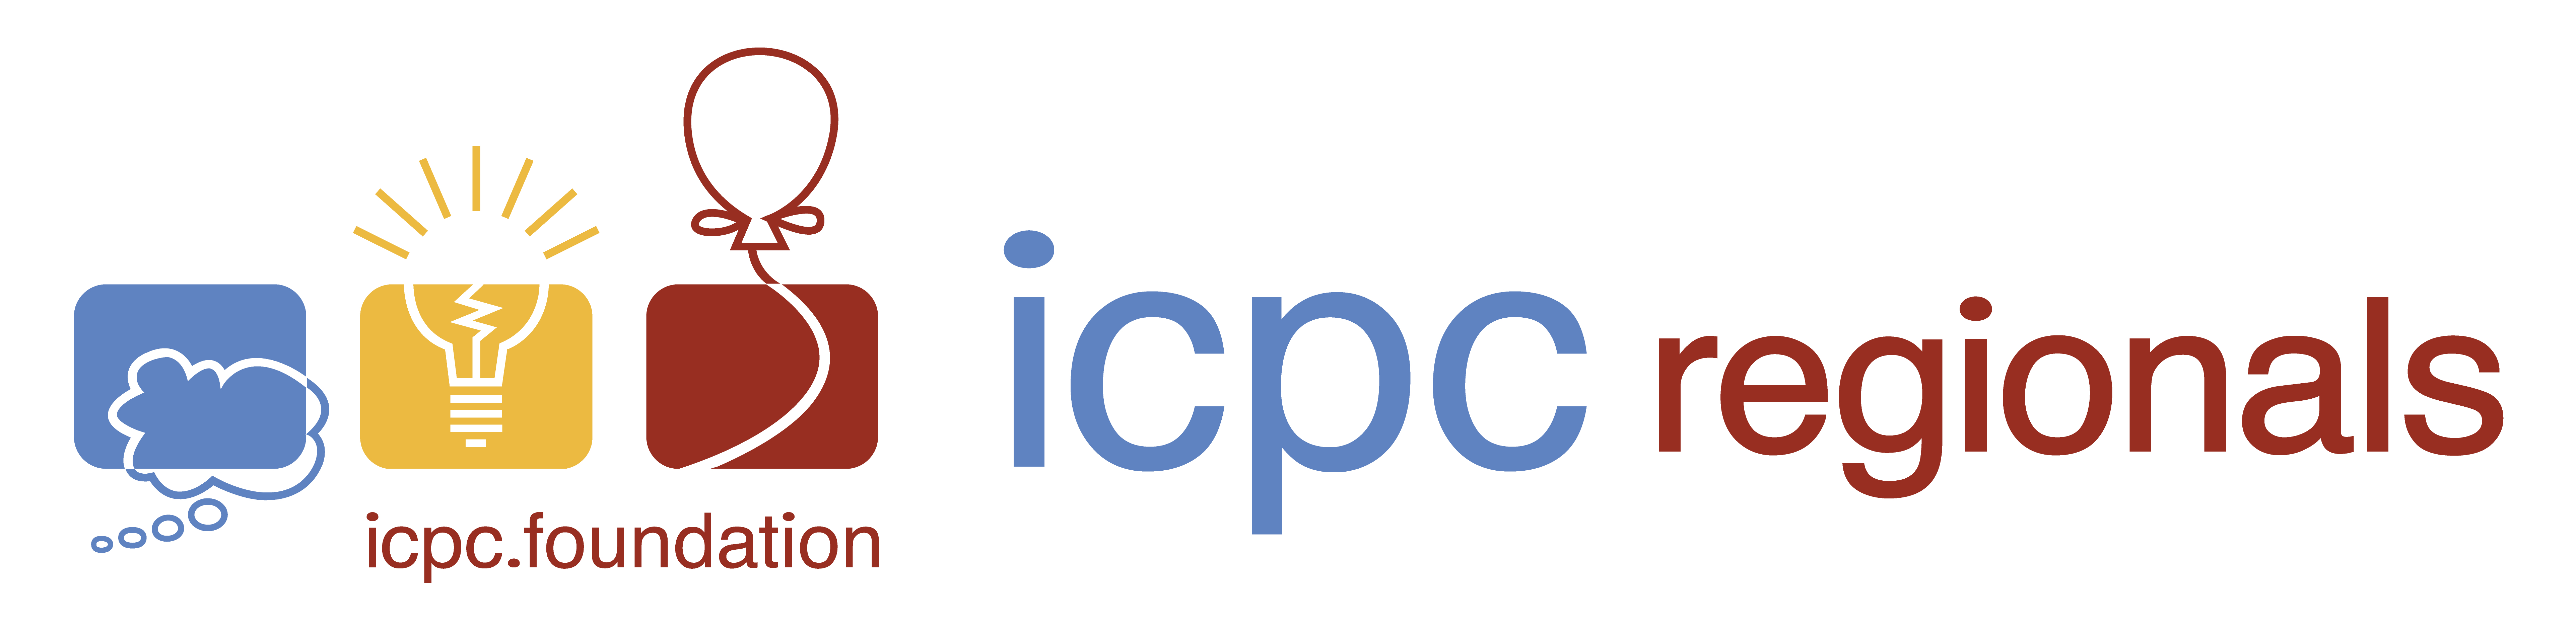 ICPC Regionals Logo